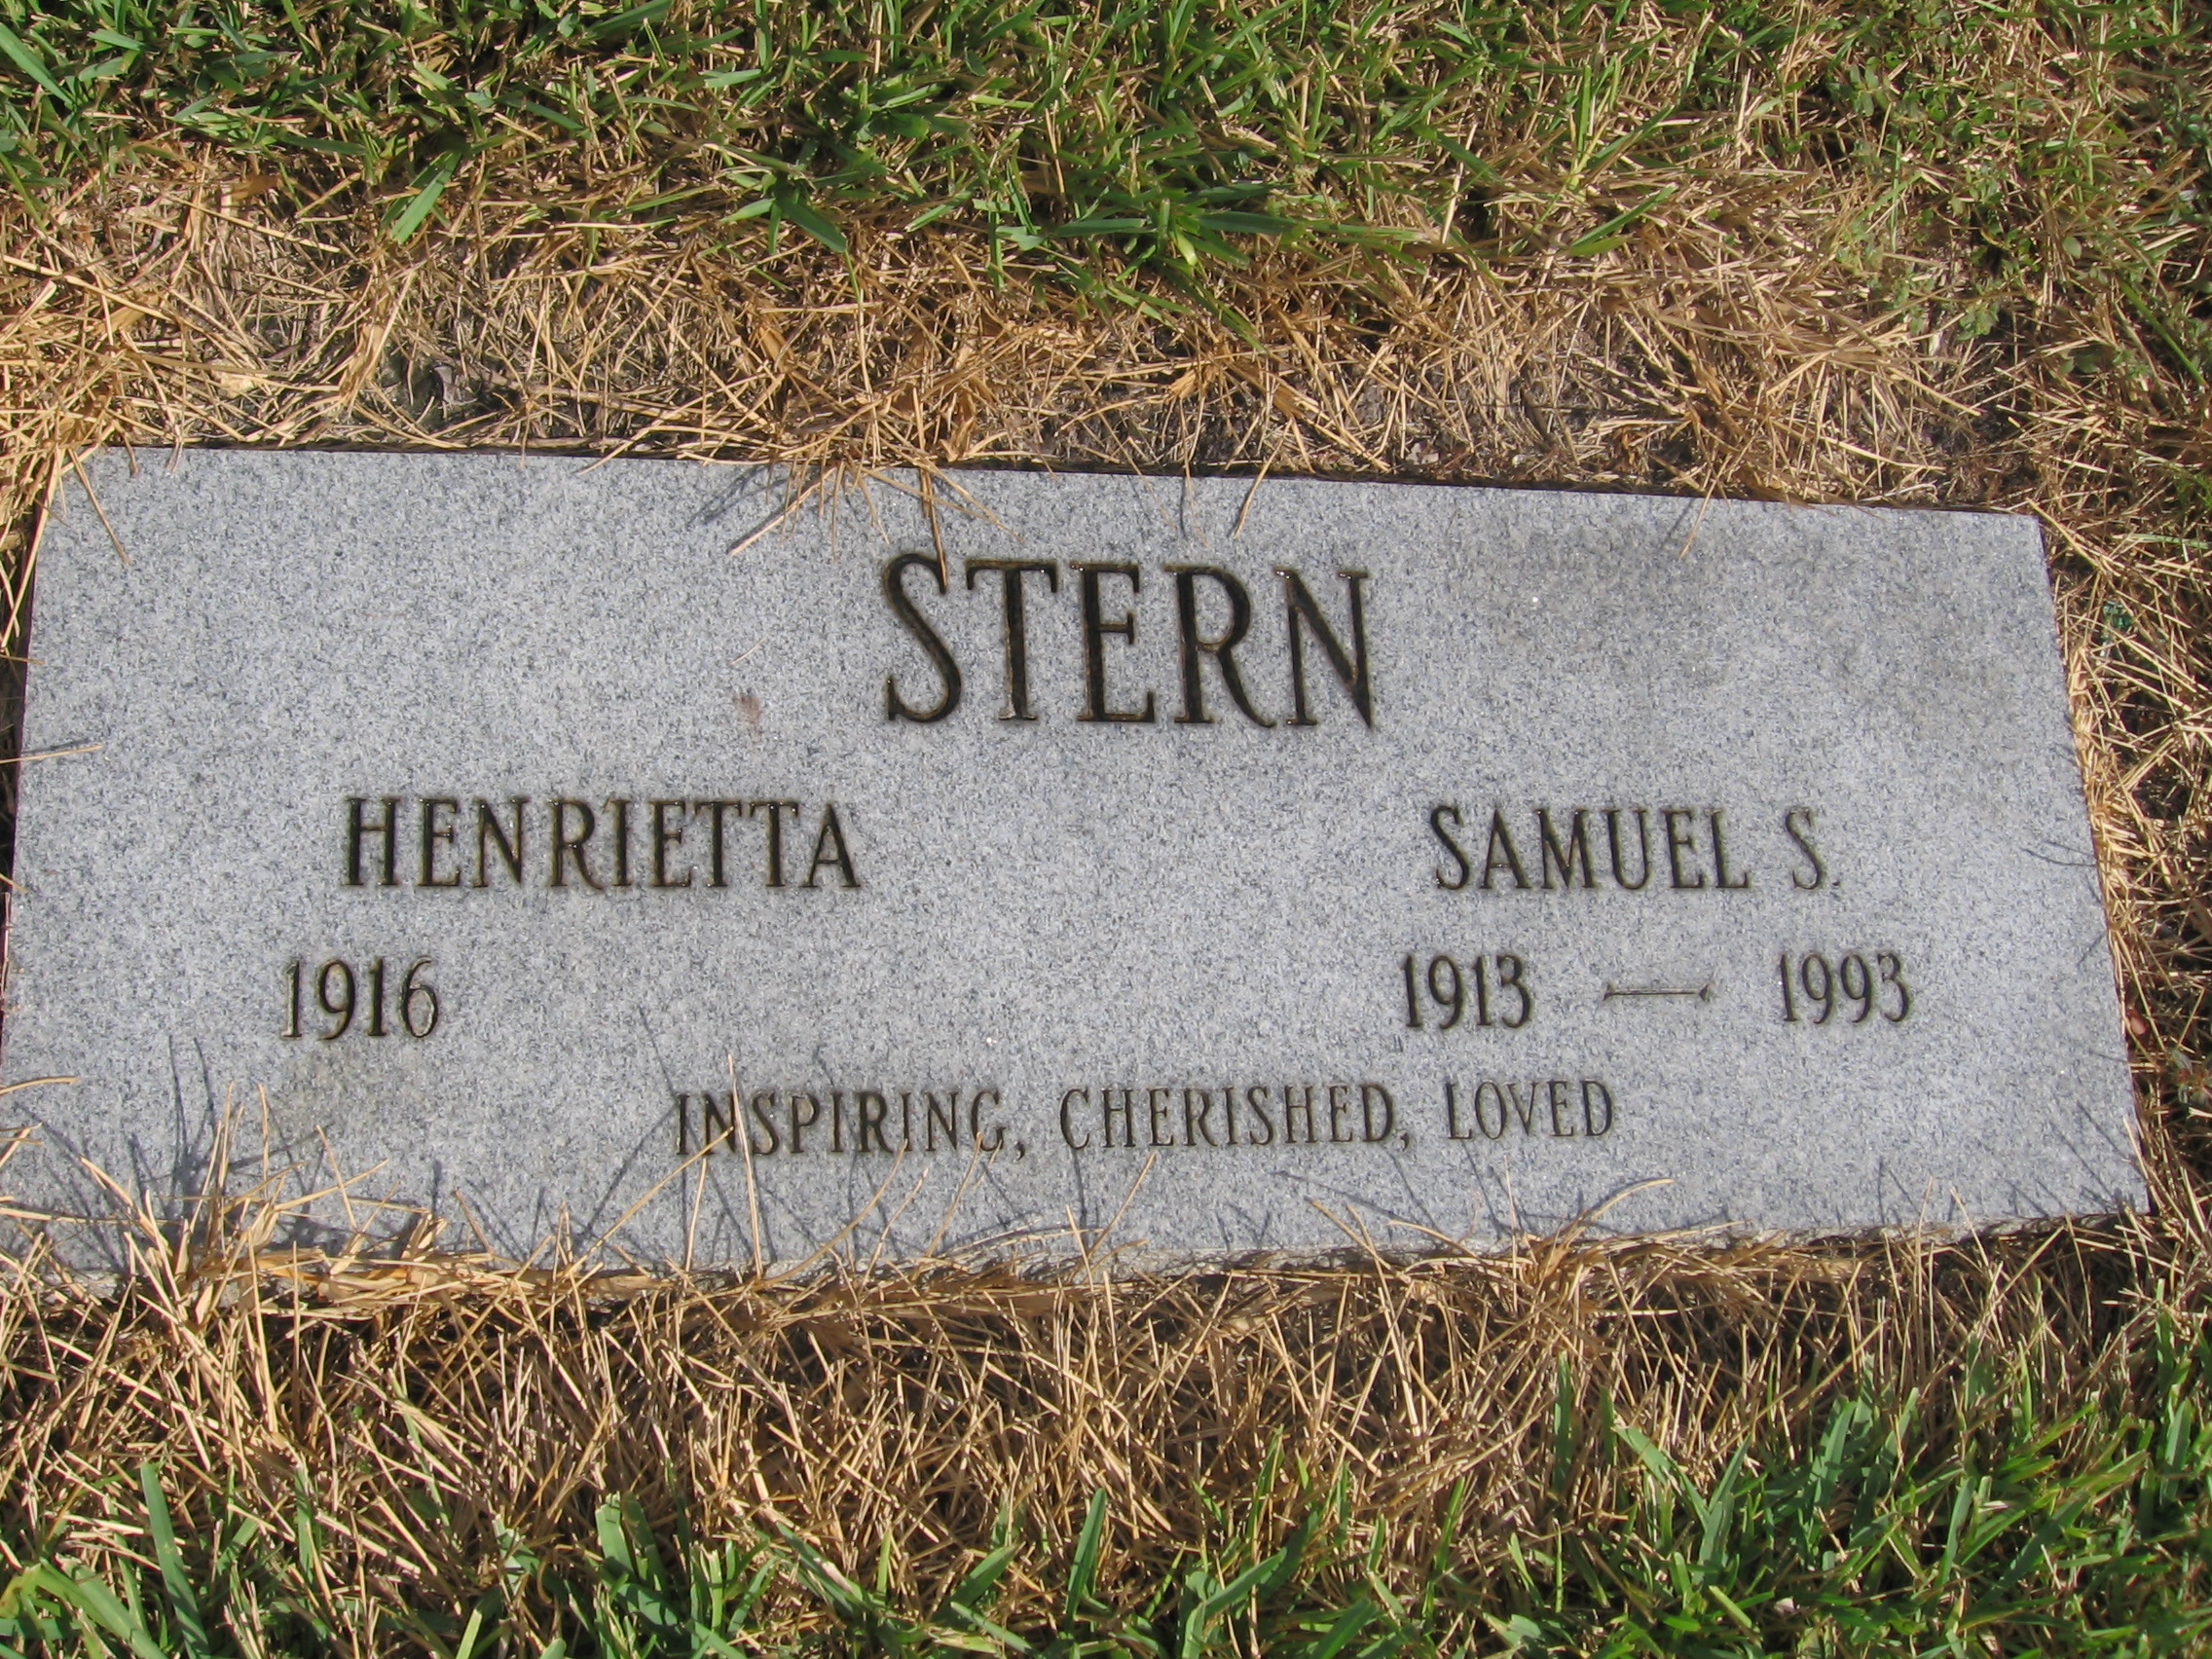 Henrietta Stern